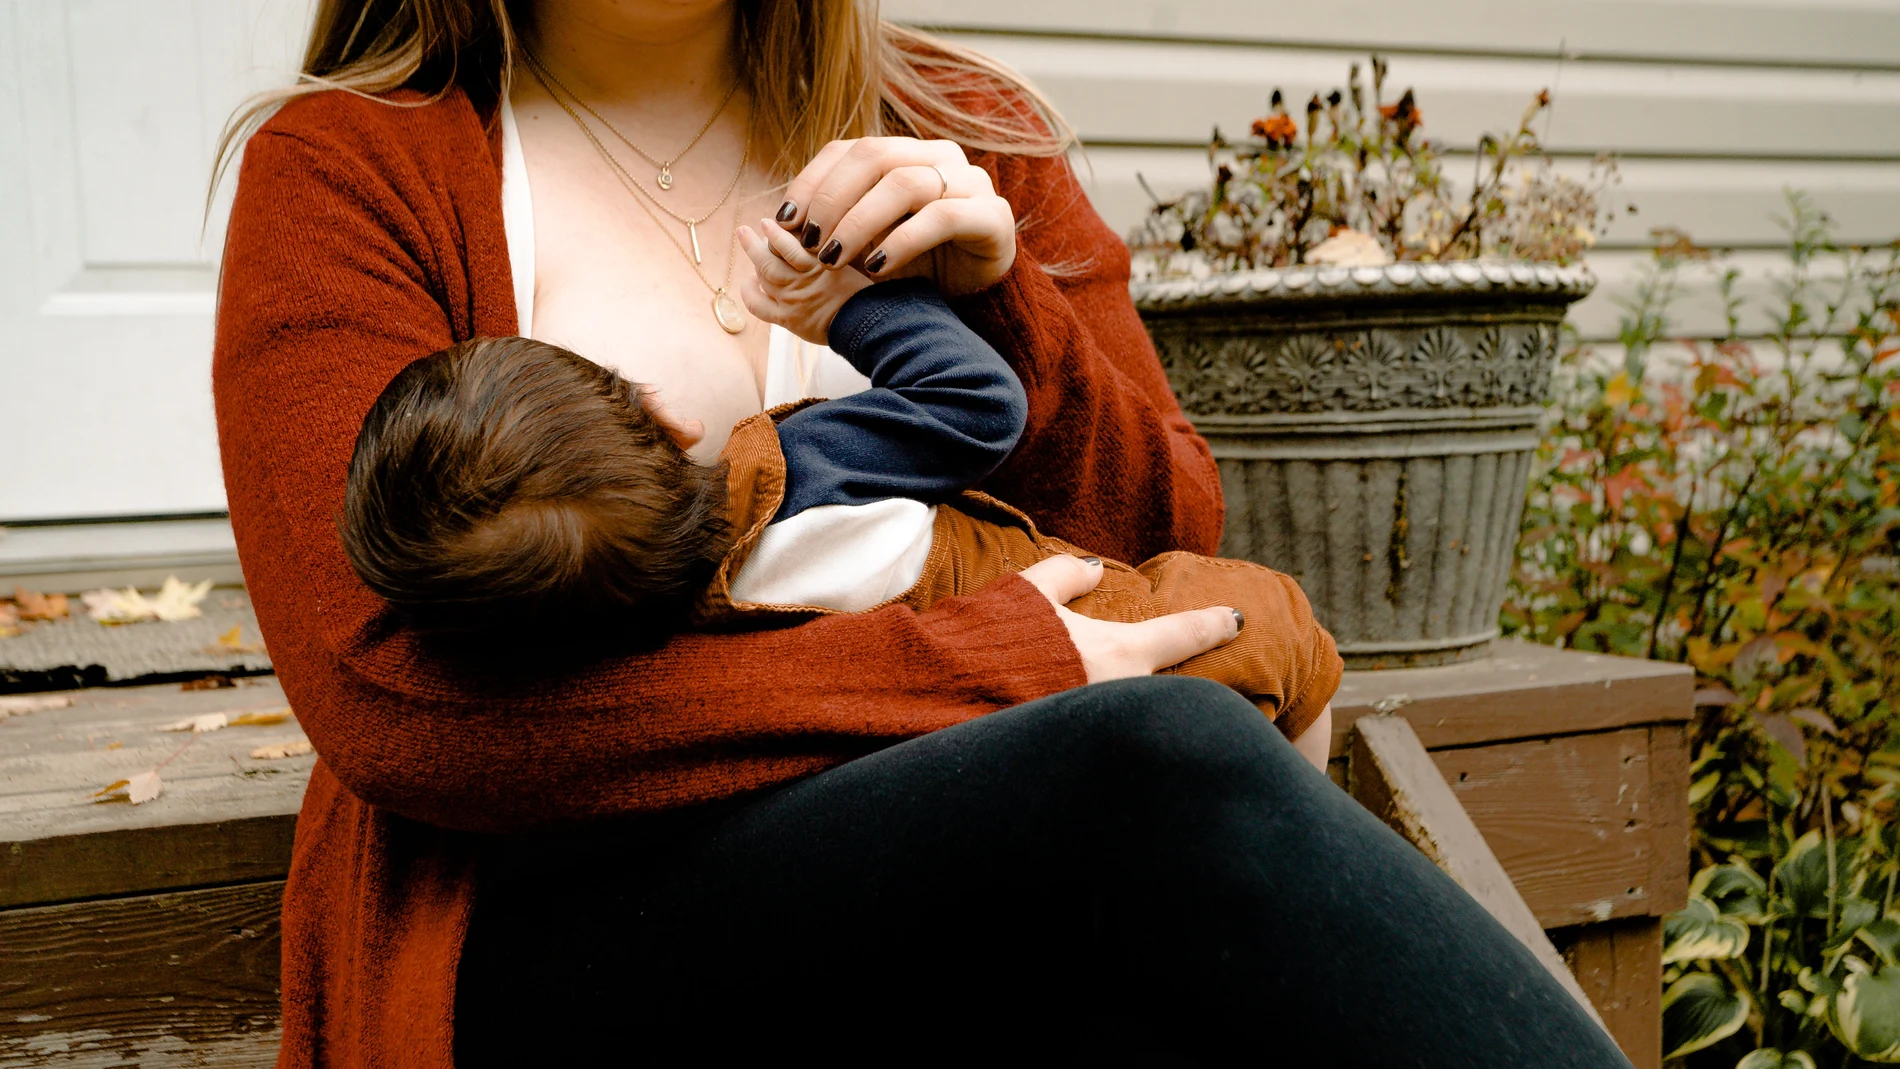 La lactancia materna ayuda a prevenir el deterioro cognitivo de las madres, según un nuevo estudio